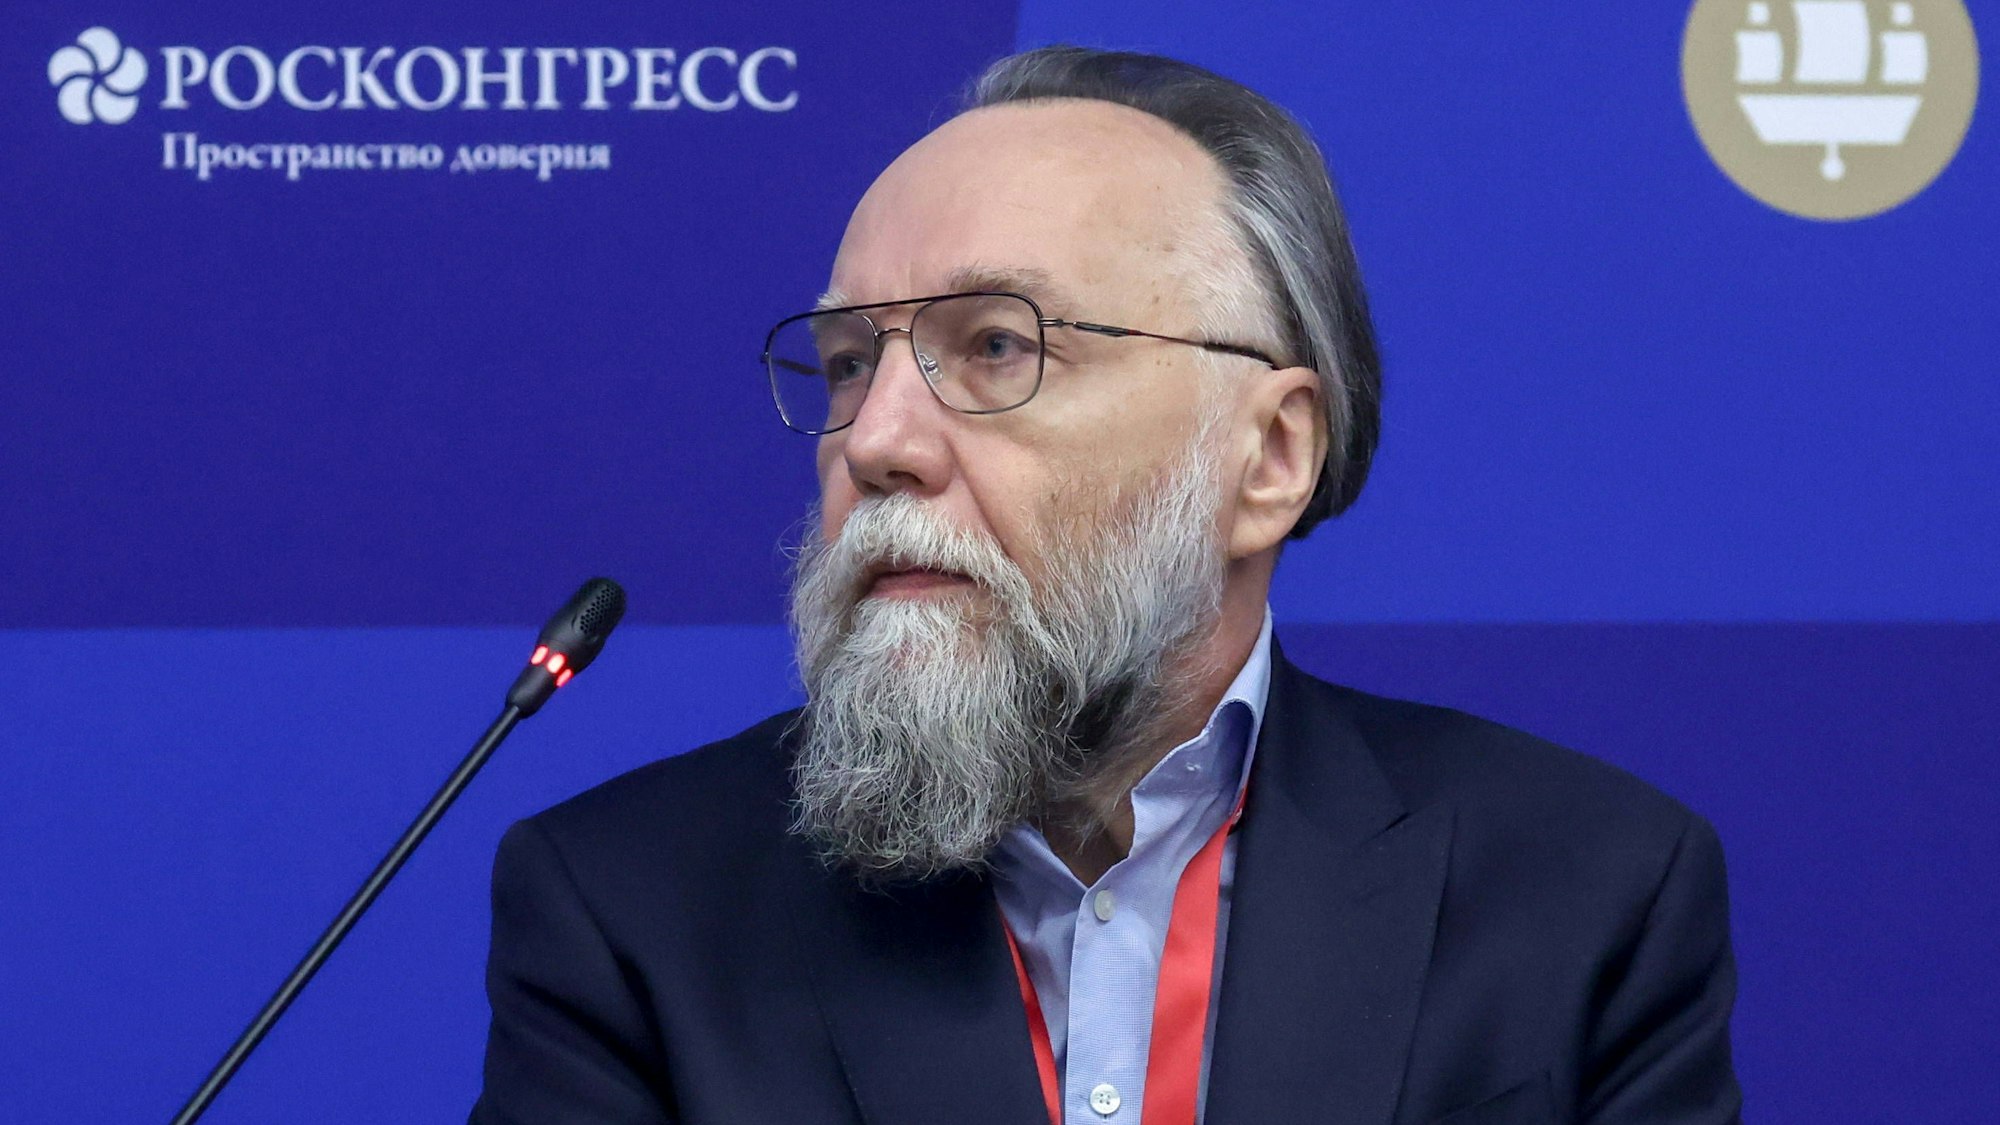 Der russische Faschist Alexander Dugin gilt bei manchen als „Putins Vordenker“, andere ziehen seinen tatsächlichen Einfluss auf den Kreml in Zweifel. (Archivbild)